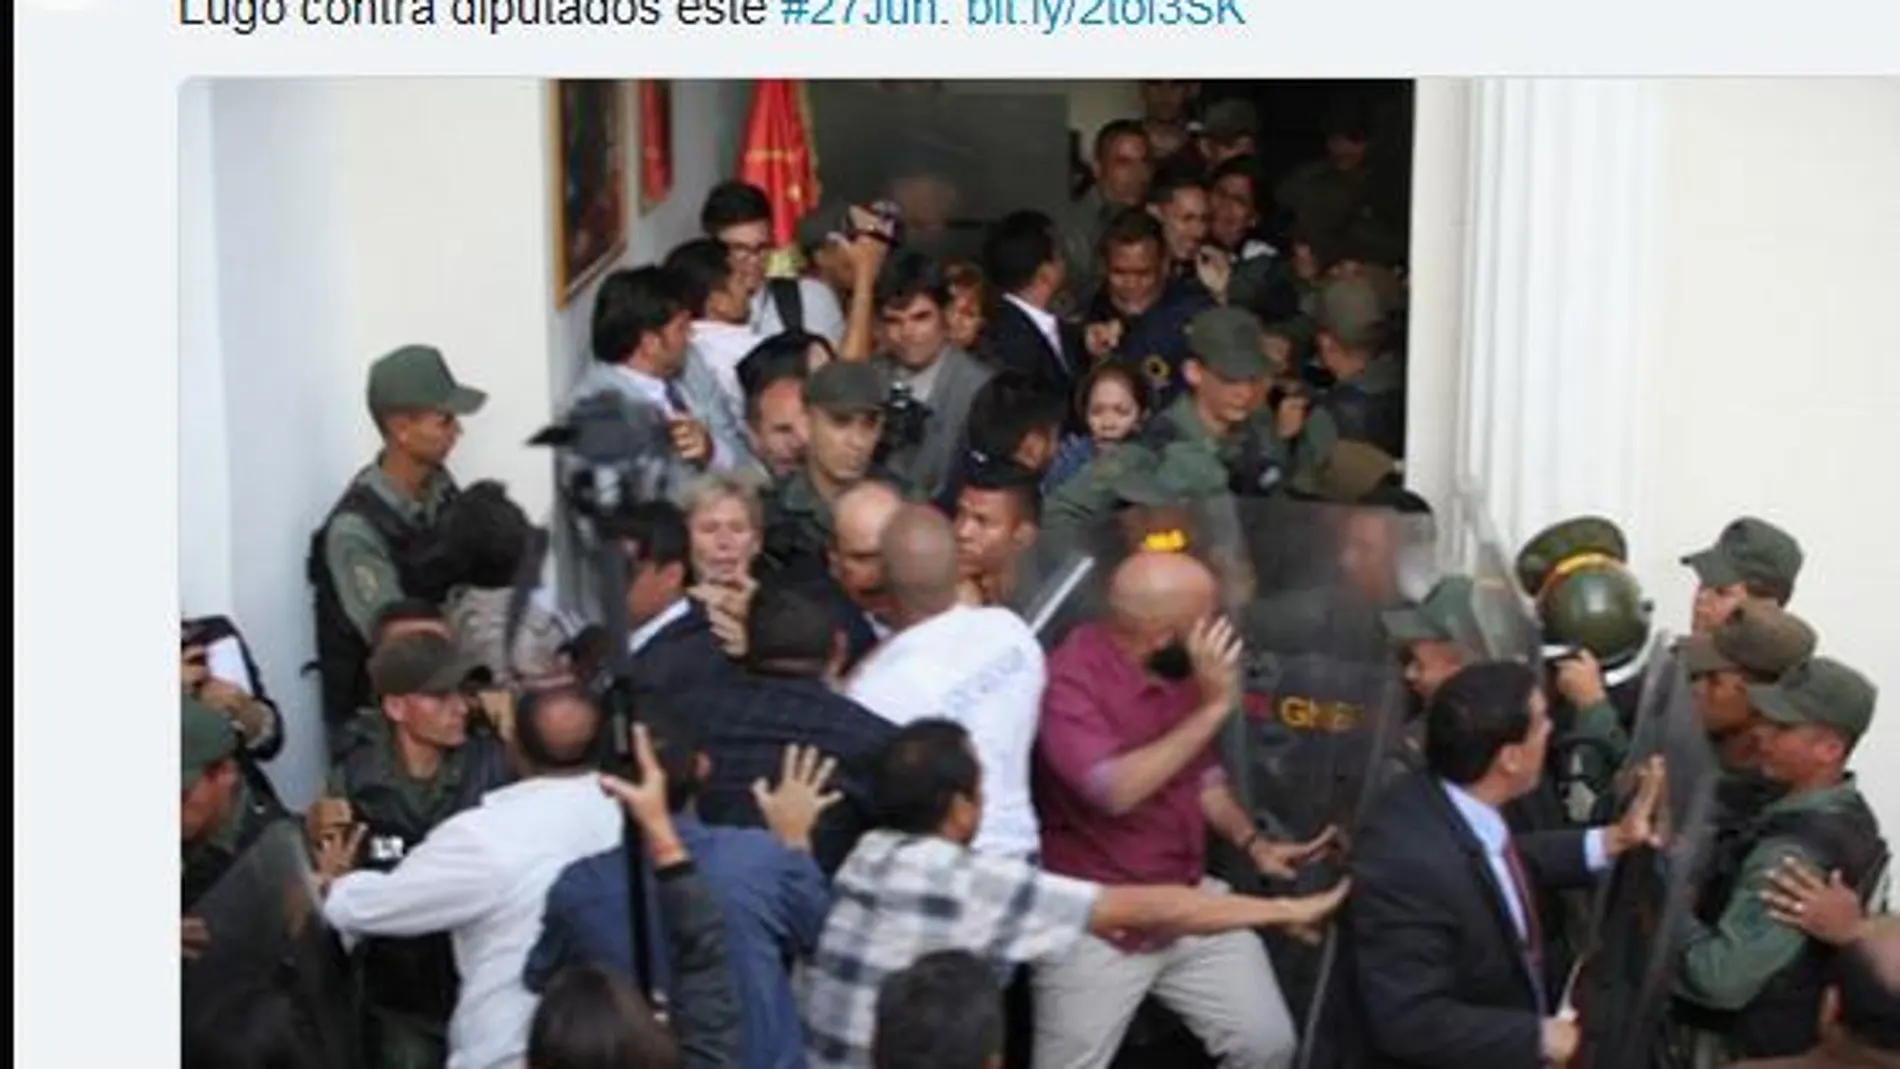 La oposición venezolana denuncia los “golpes de Estado” contra la Asamblea y el Ministerio Público